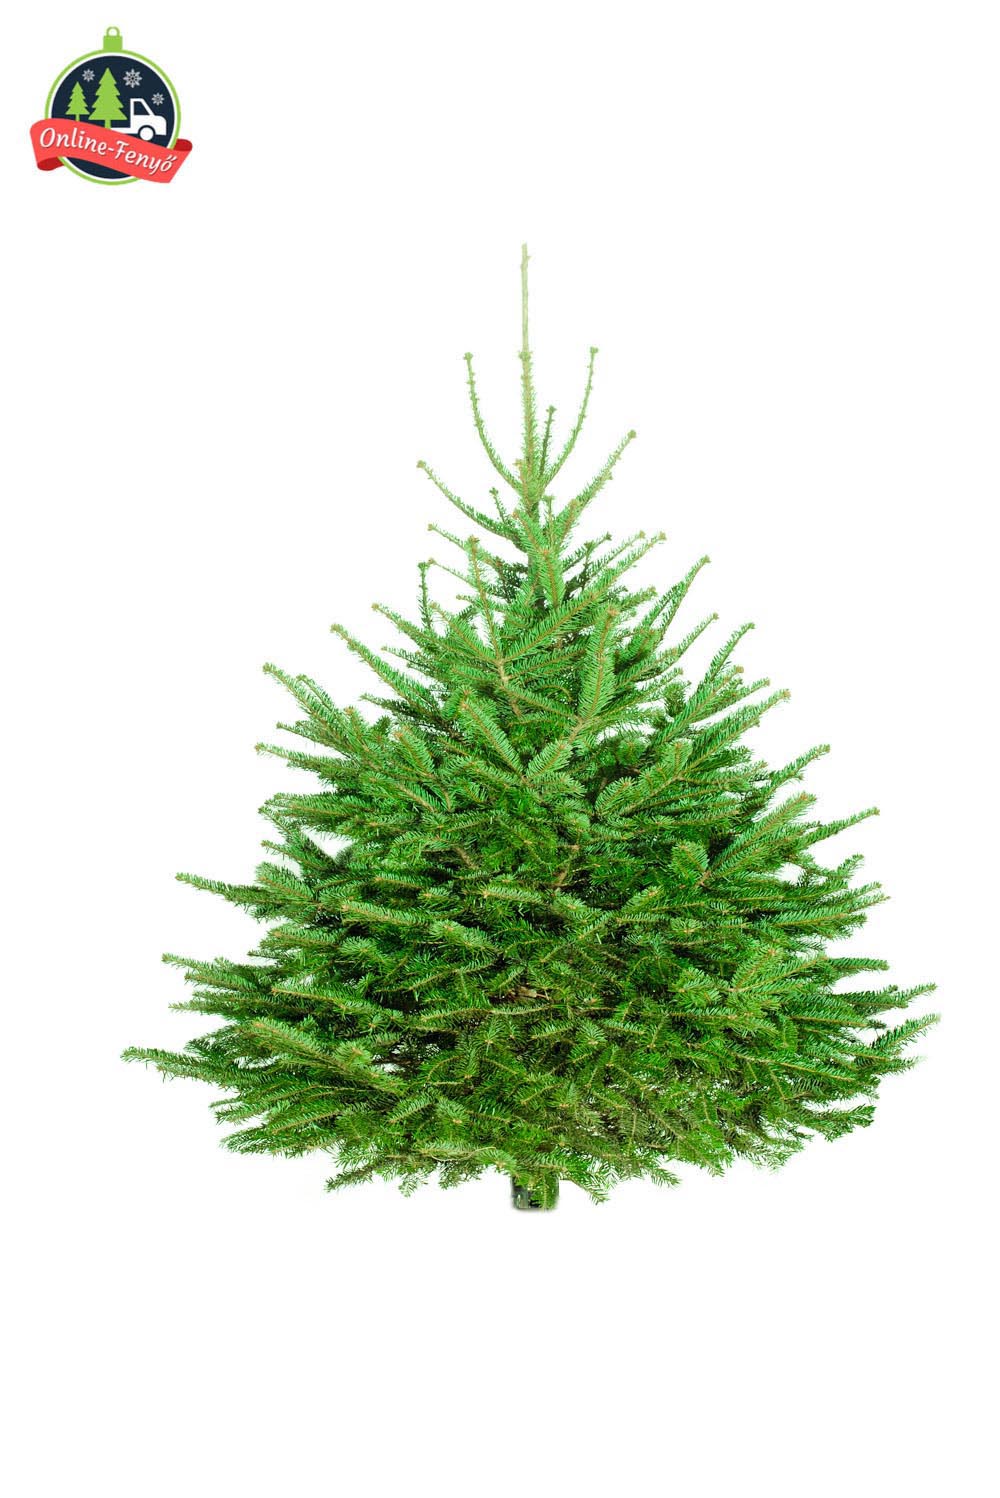 Cégek, üzletek számára 150, 200 cm-es nordmann karácsonyfa